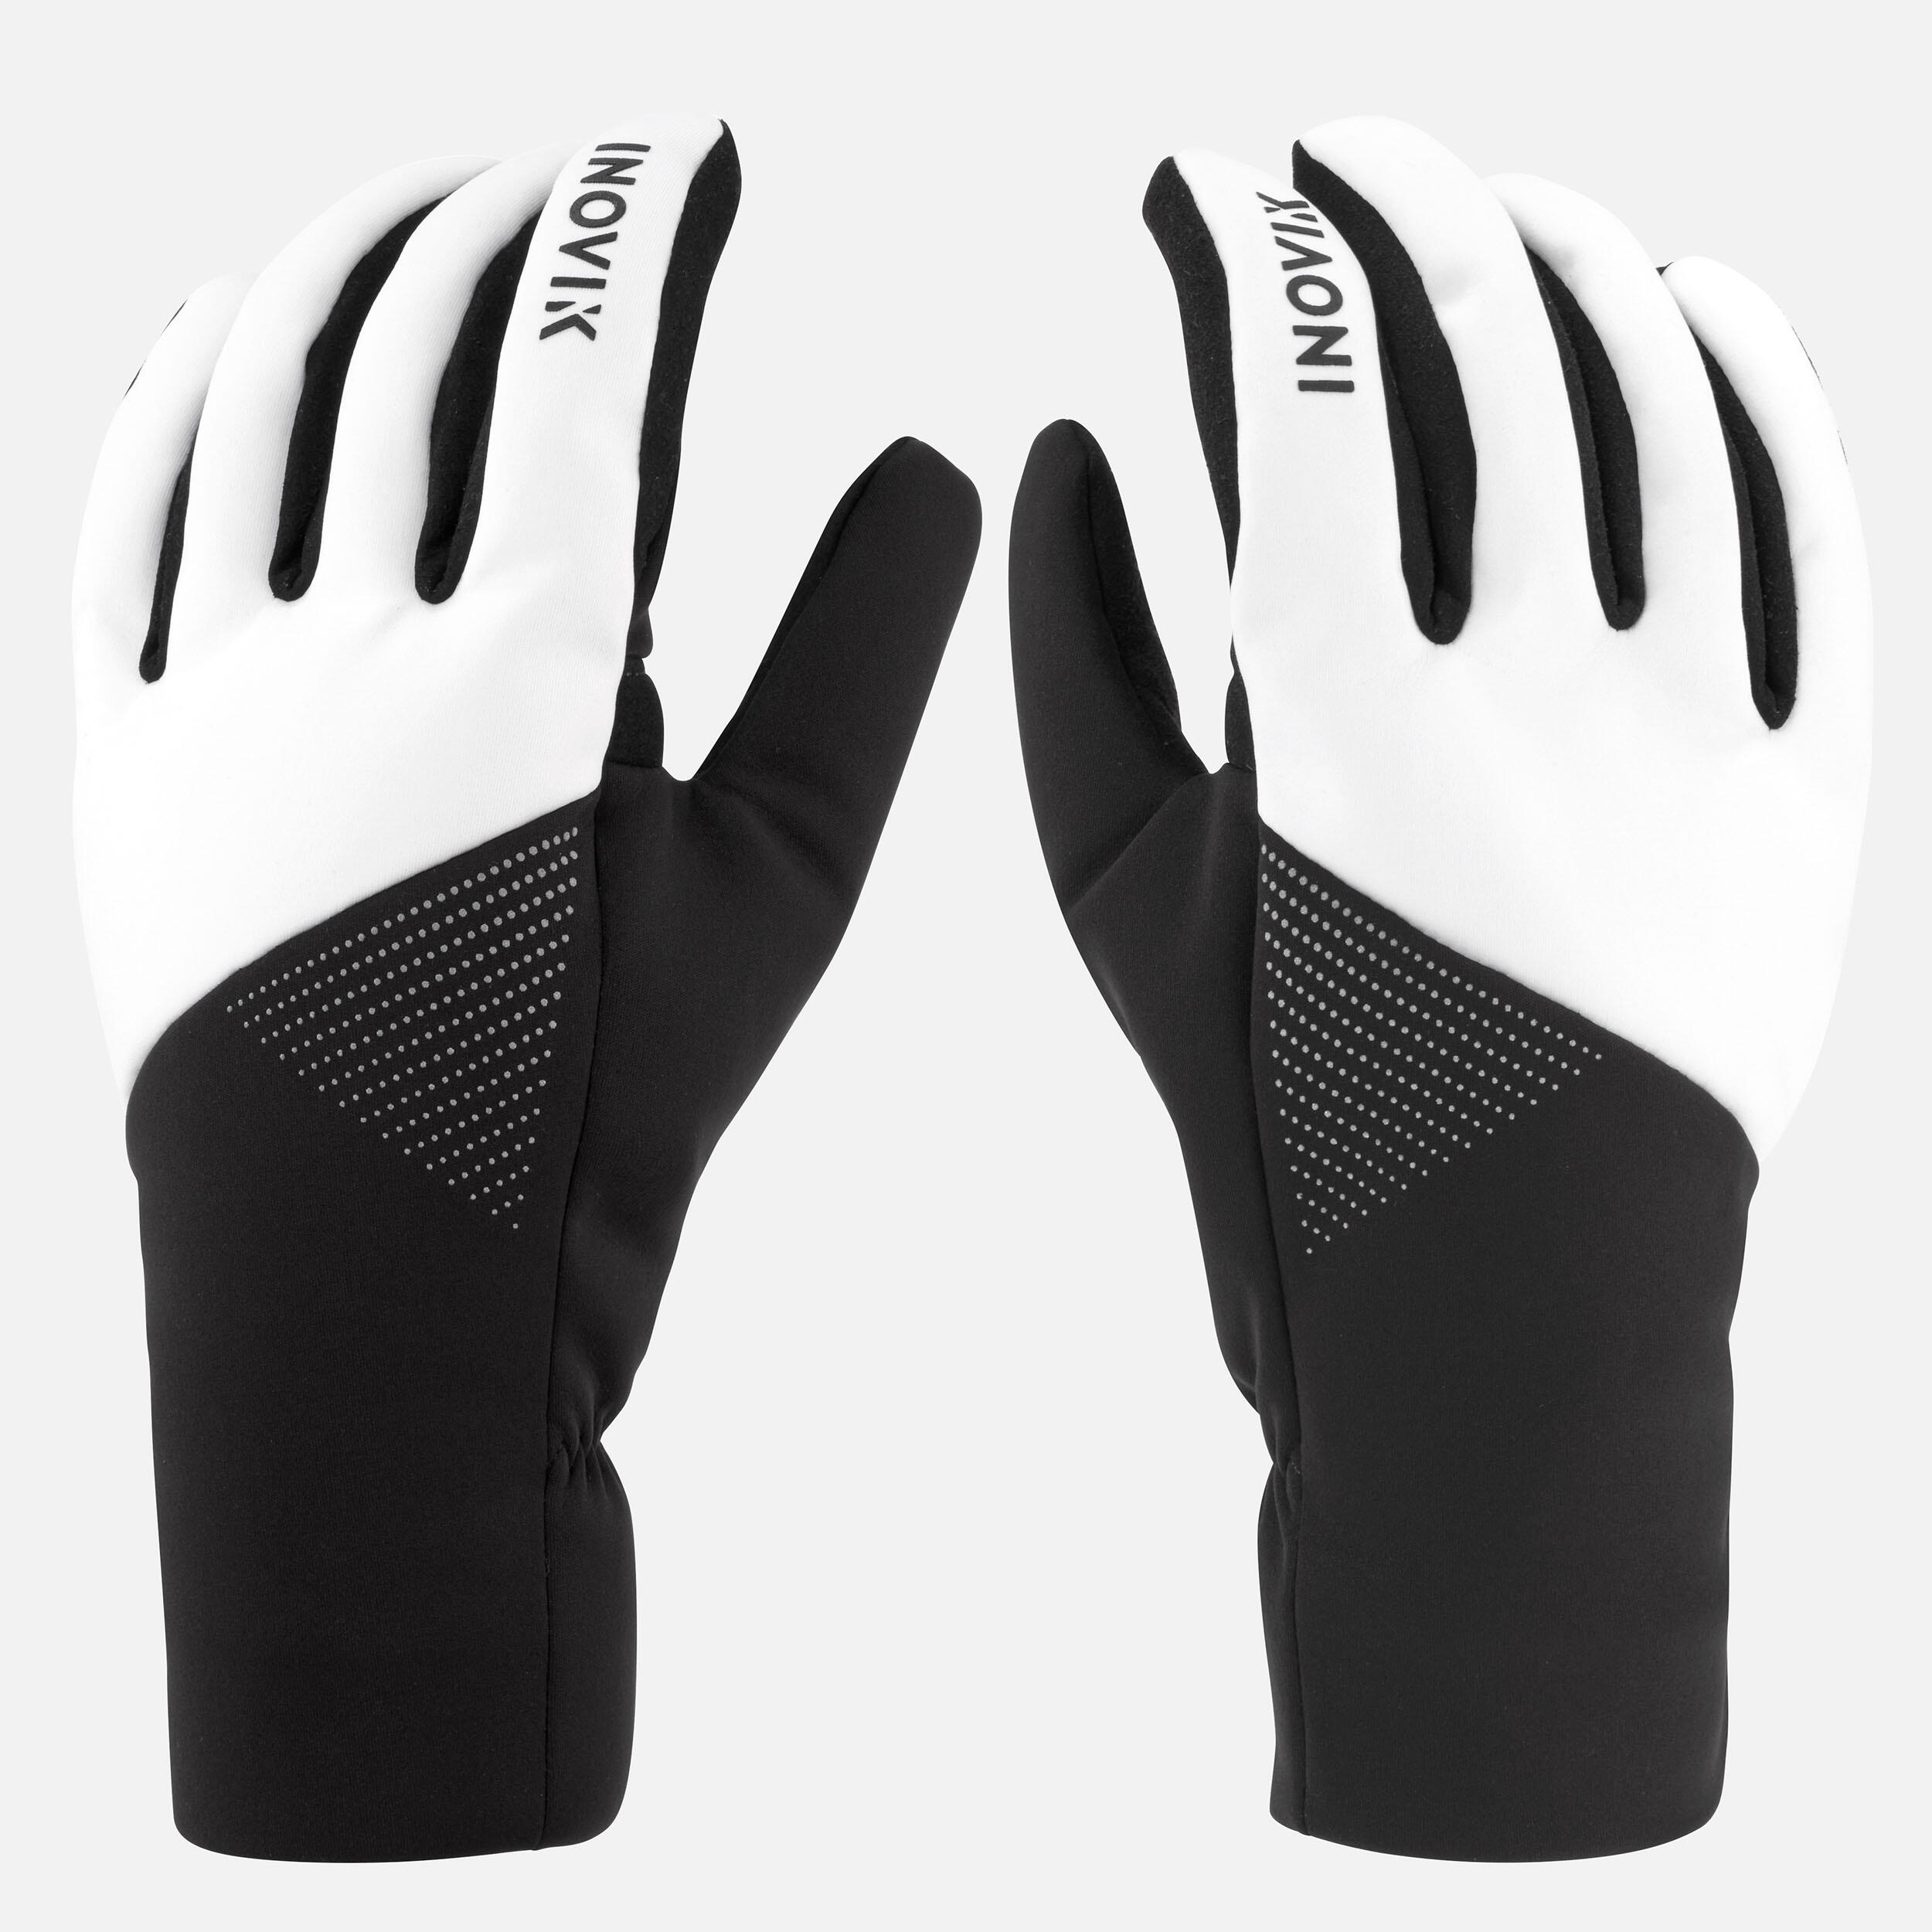 Women's Cross-Country Ski Gloves 100 4/9